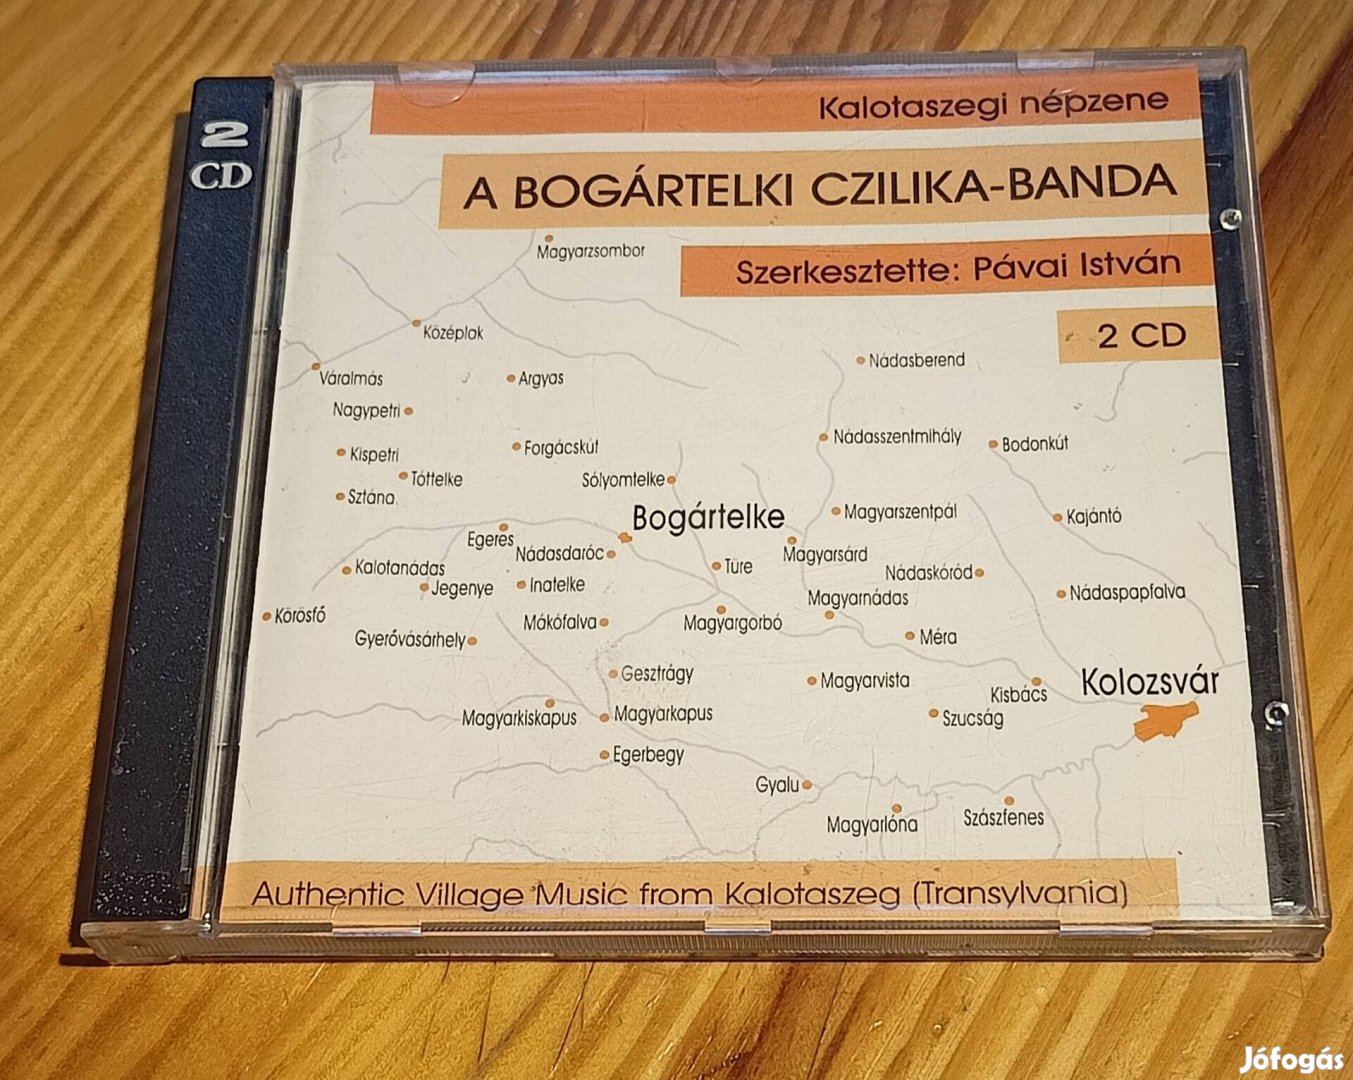 A Bogártelki Czilika-Banda - Kalotaszegi népzene 2CD